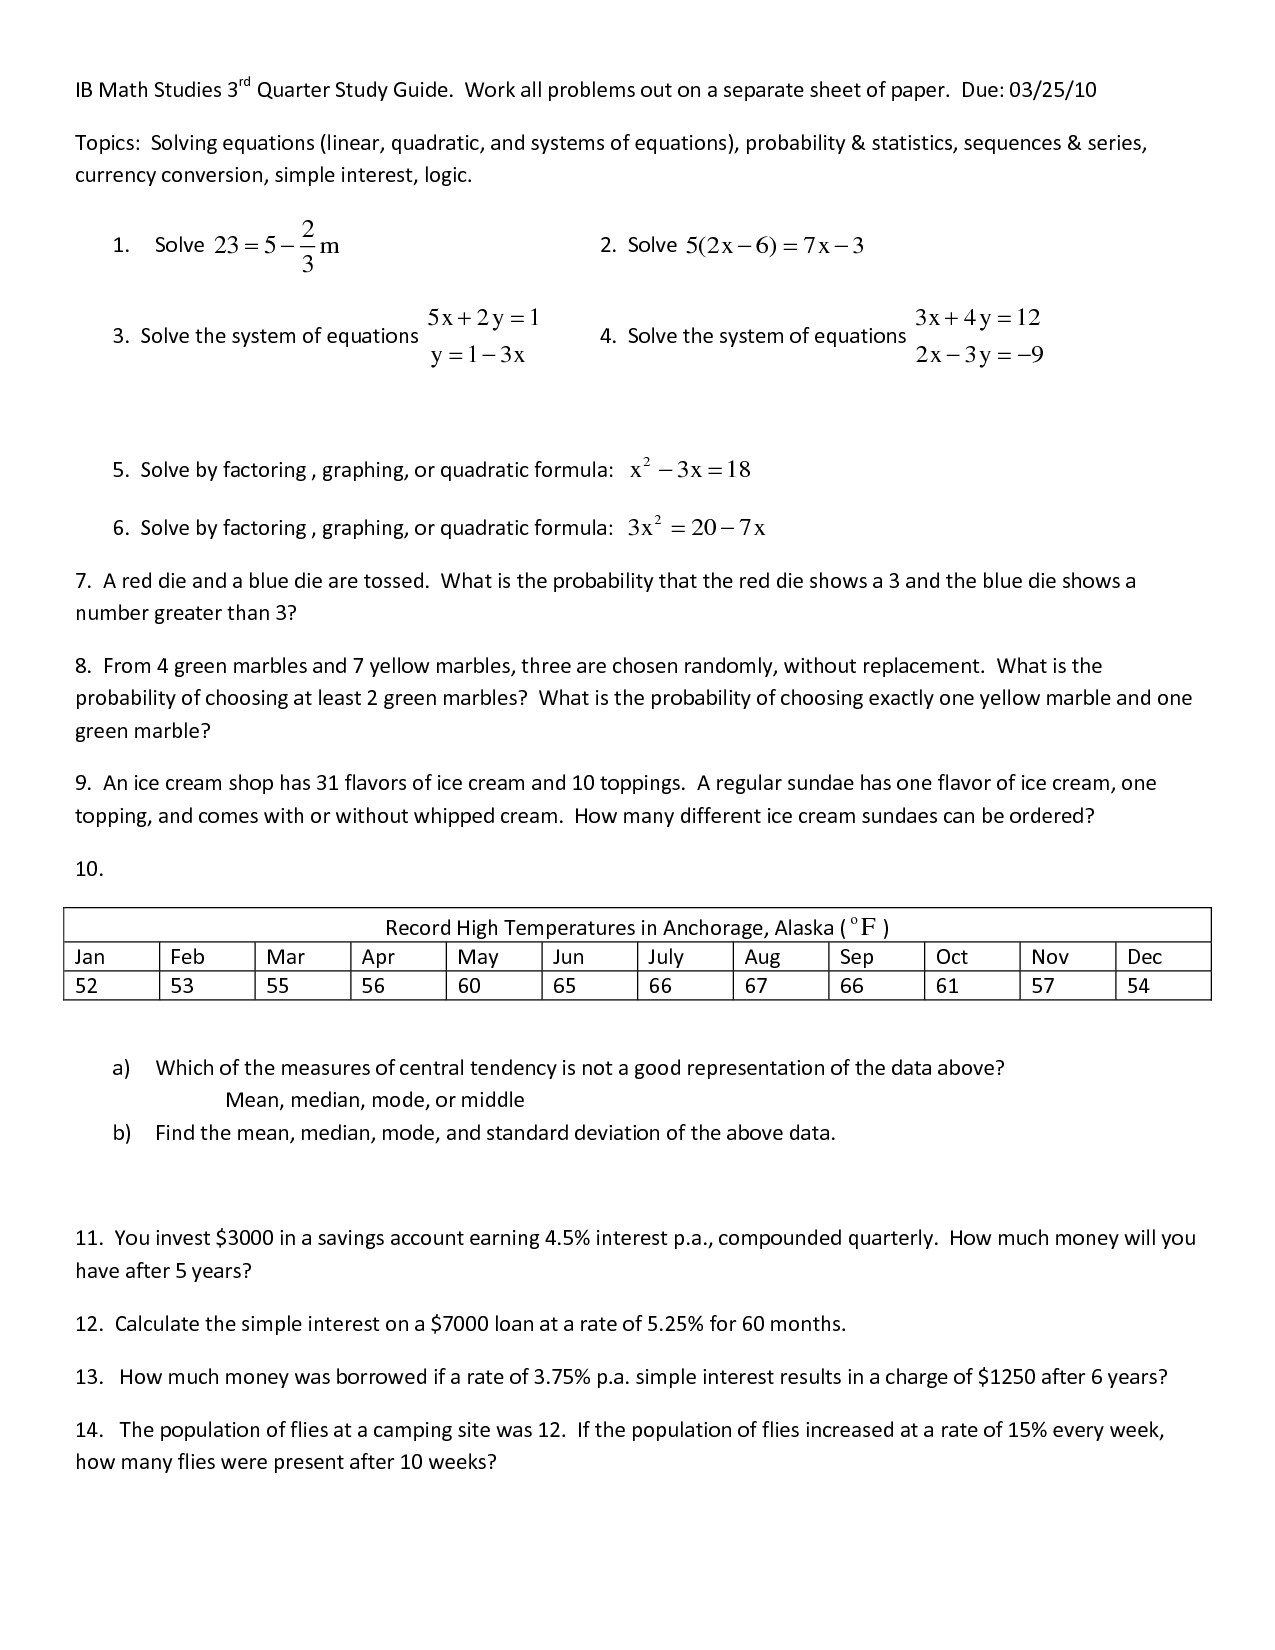 GED Math Study Sheet Image